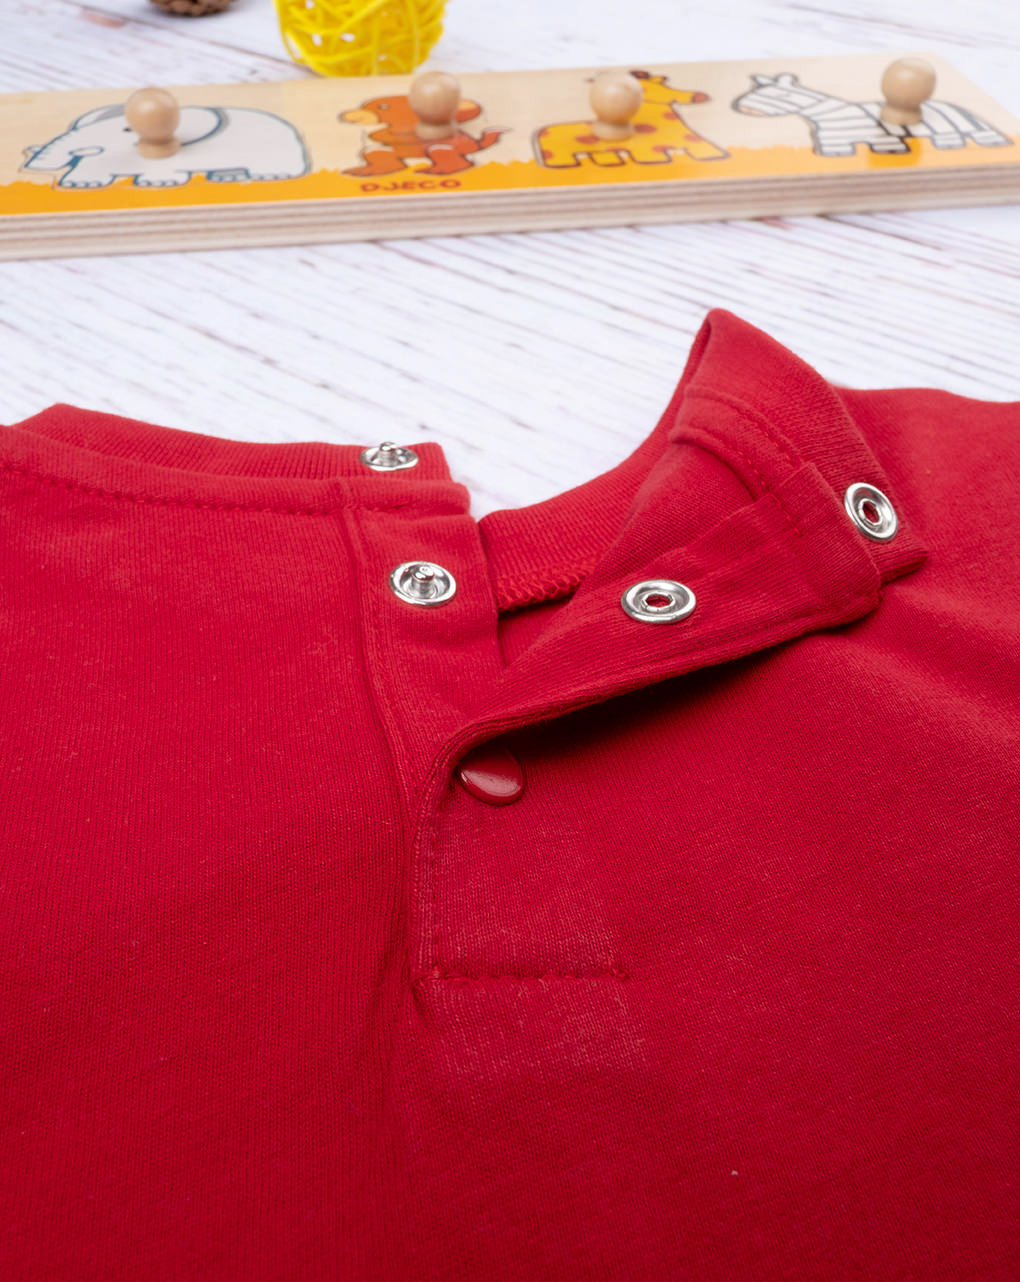 βρεφική μπλούζα κόκκινη play off για αγόρι - Prénatal